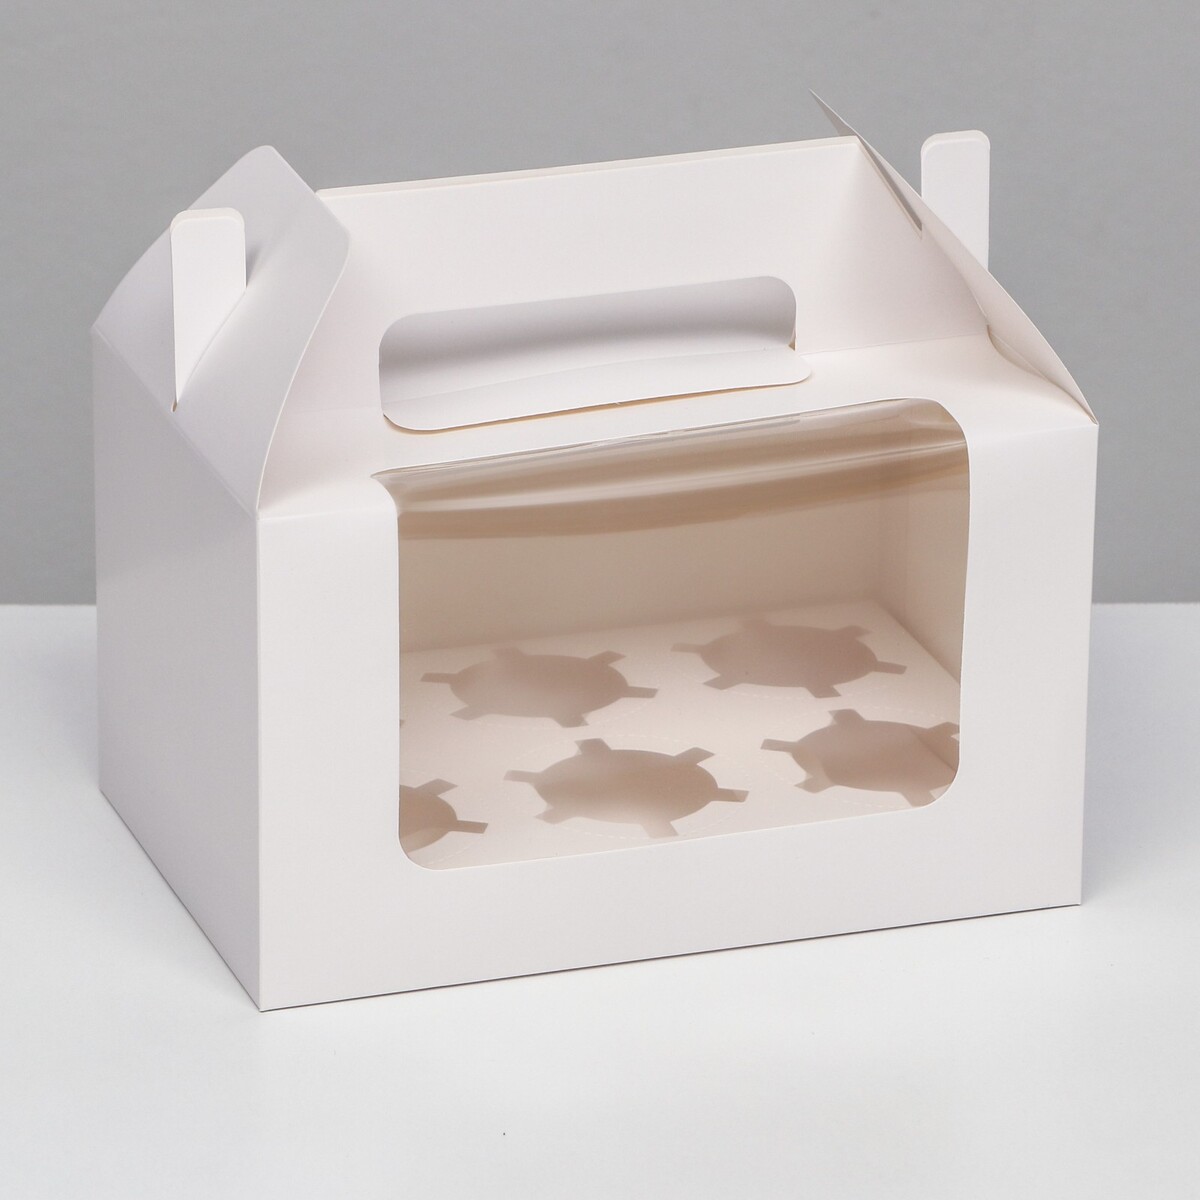 Кондитерская складная коробка для 6 капкейков, белая 23,5 х 16 х 14 см кондитерская складная коробка для 4 капкейков 16 х 16 х 10 красная